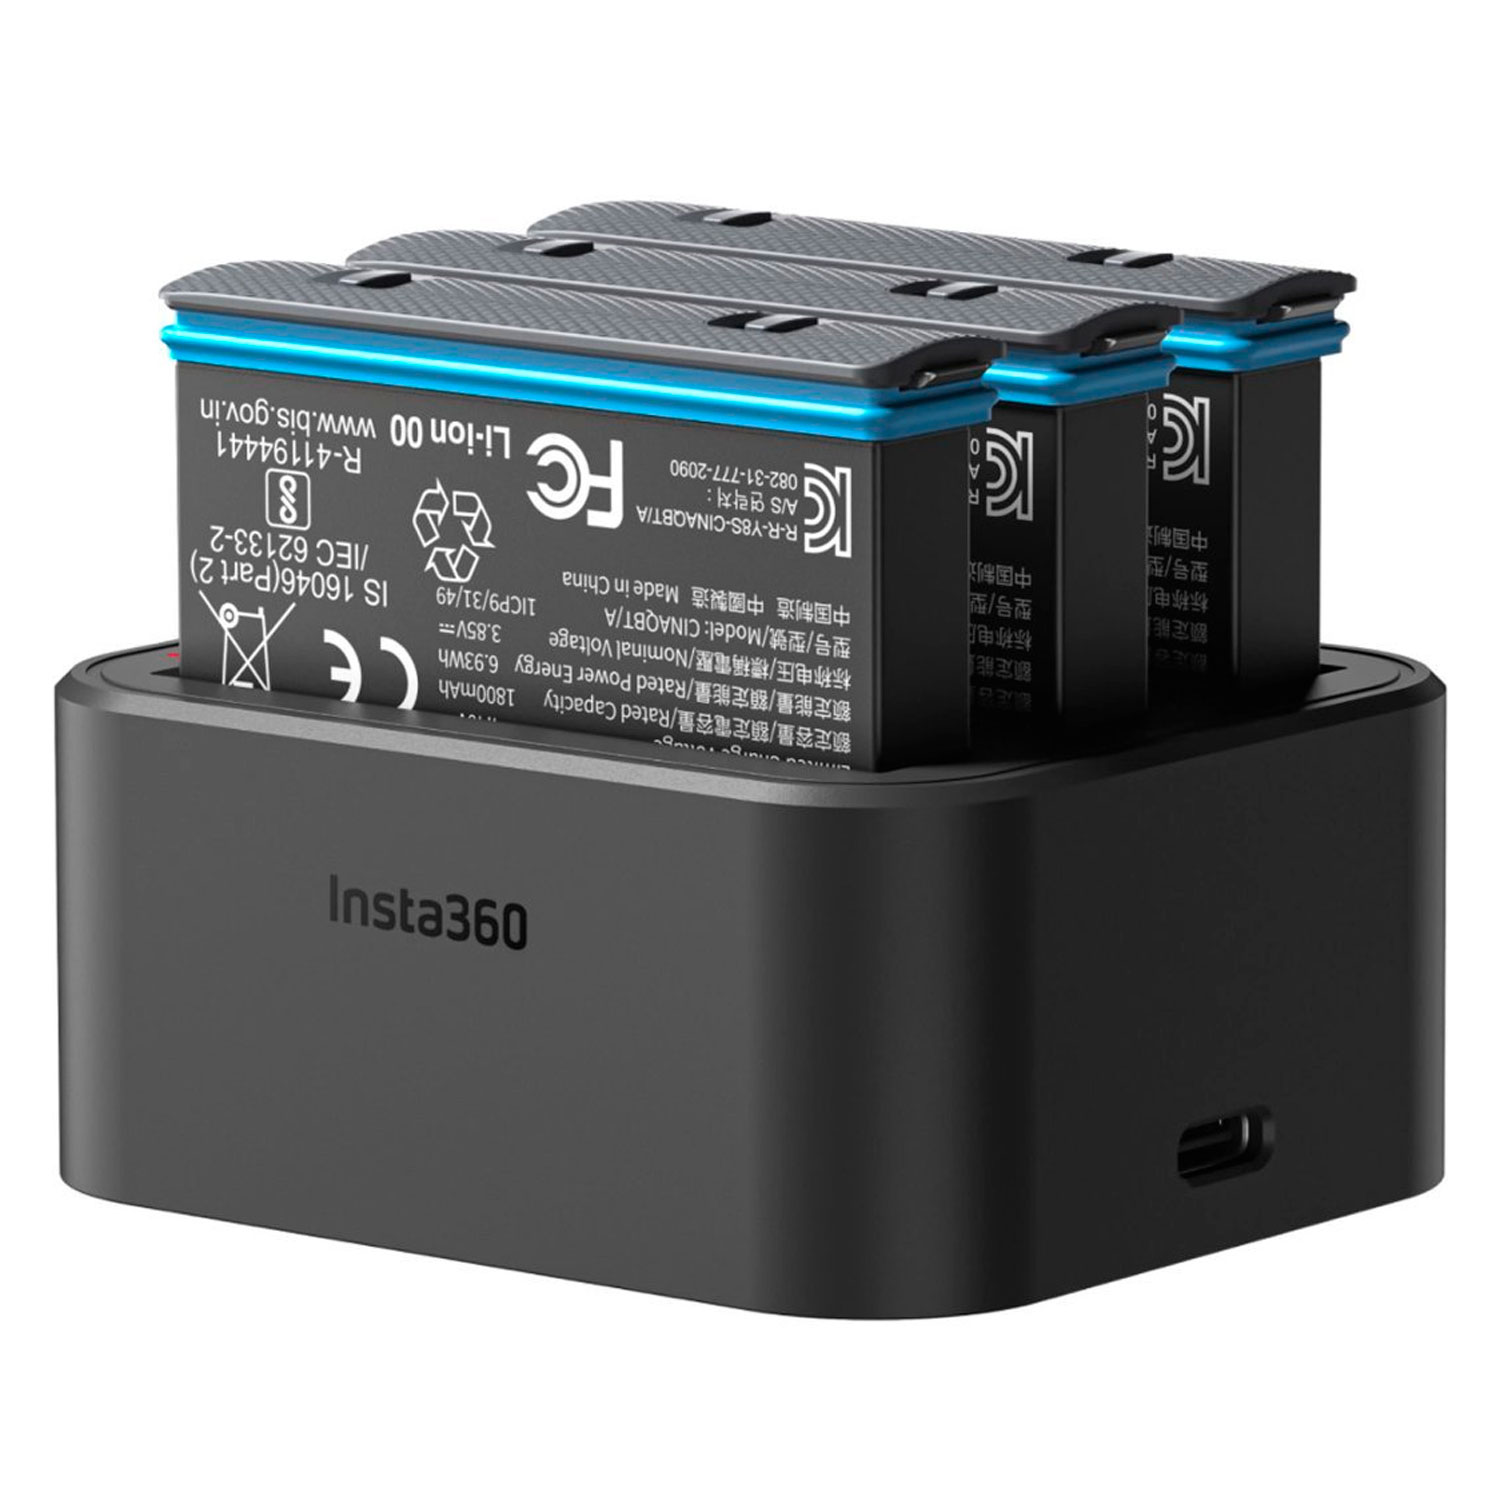 Hub de Carregamento Insta360 CINSAAQ/A Fast Charge USB-C para Serie X3